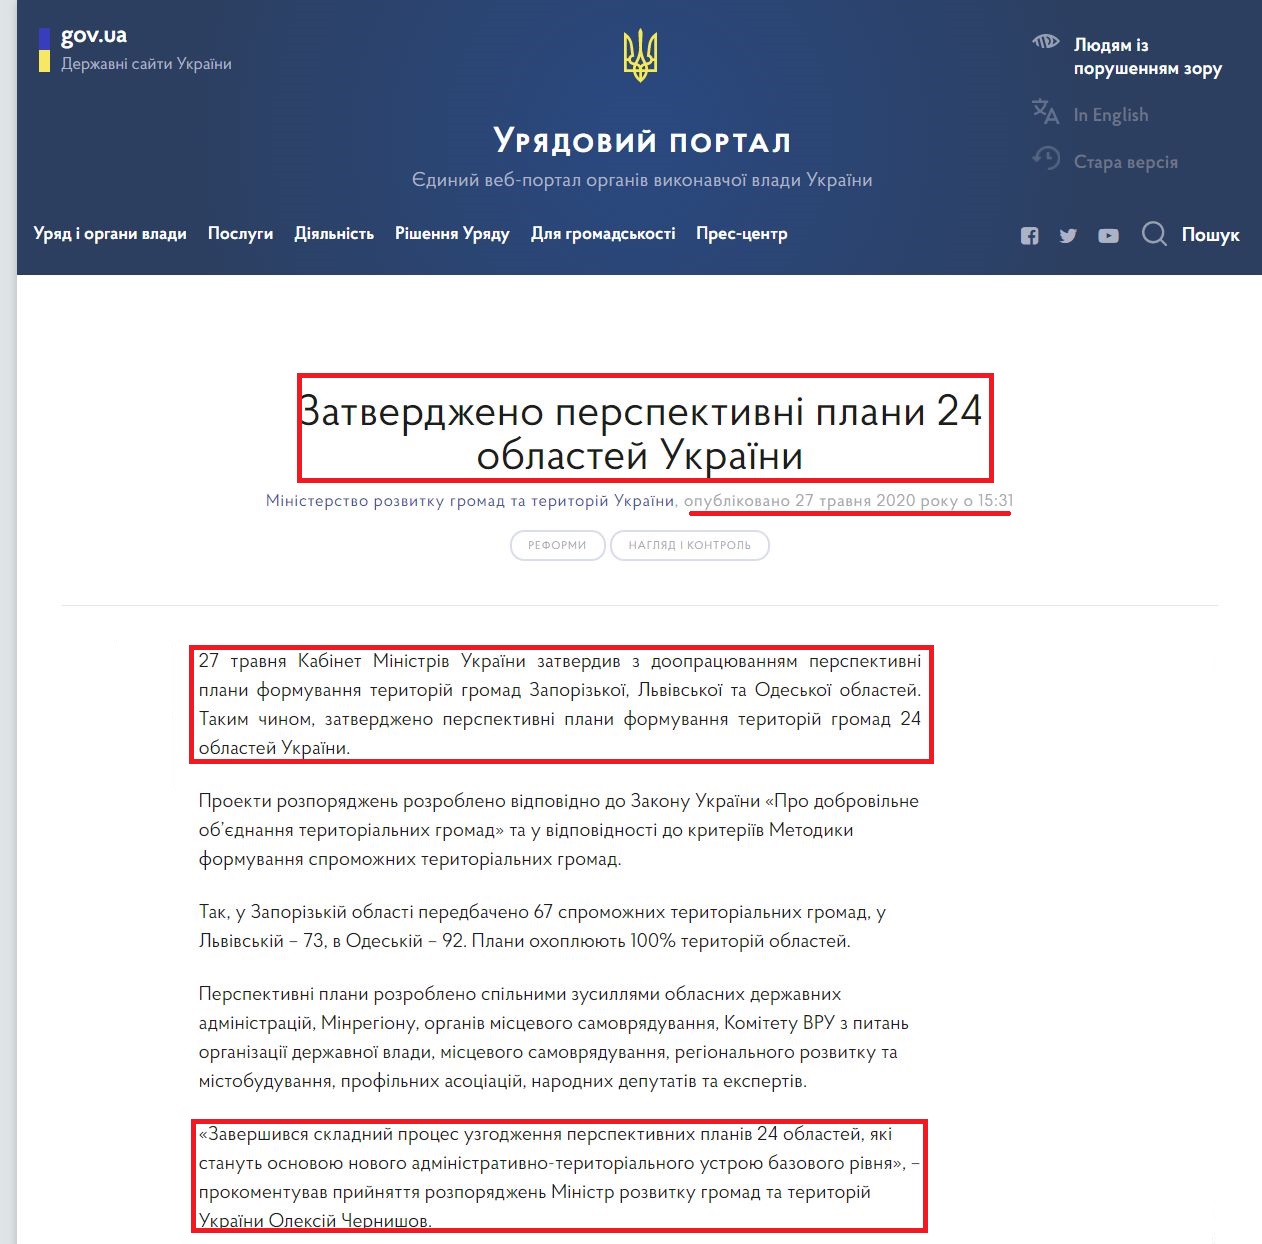 https://www.kmu.gov.ua/news/zatverdzheno-perspektivni-plani-24-oblastej-ukrayini